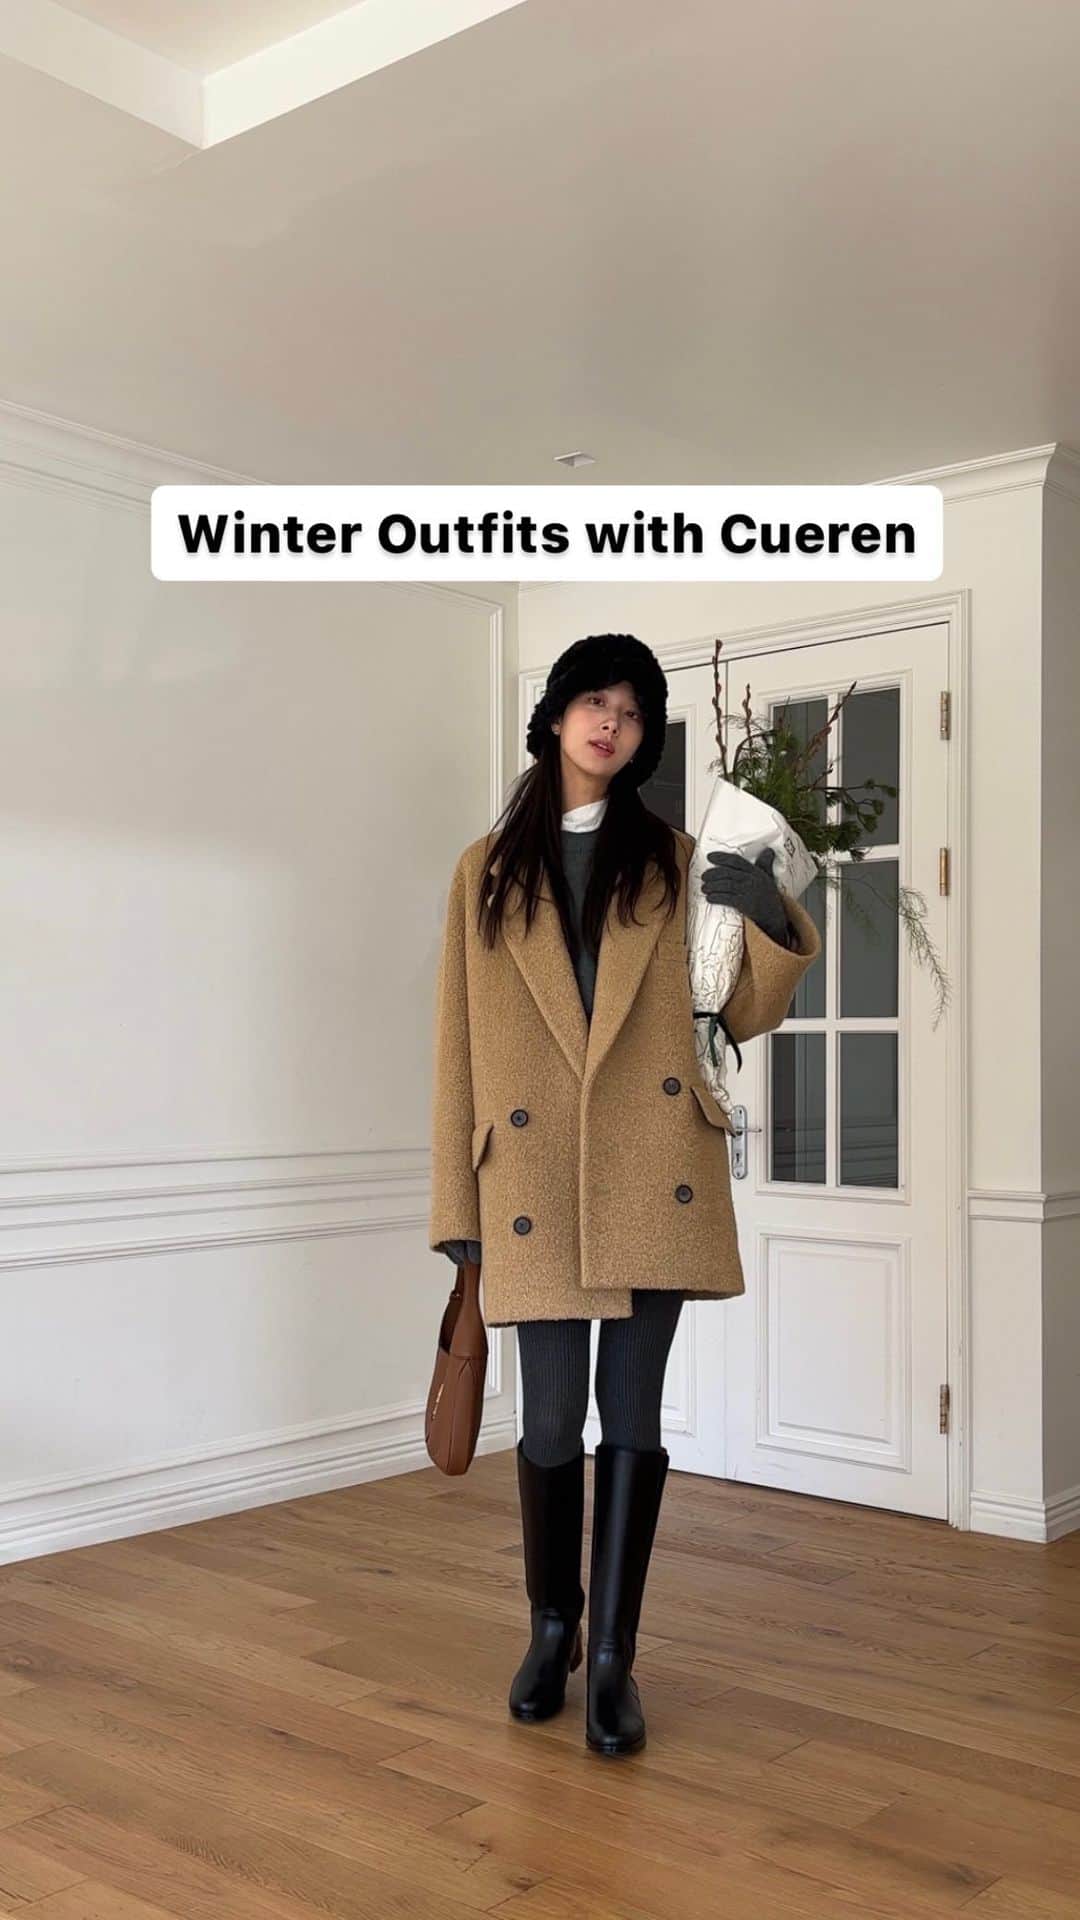 ミナ のインスタグラム：「#광고 4 Winter Outfits with @cueren_official  가을부터 한 몸처럼 신었던 쿠에른의 ‘프라하 10니하이 부츠’와 함께 겨울 데일리룩을 준비해봤어요❄️ 내돈내산 찐추천템이었기 때문에 더욱 애정담아 추천하는 아이템🫶🏻  요즘 빠진 클래식룩의 무드에 맞게 탄탄하게 일자로 형태가 유지되는 스타일의 부츠를 찾다가 딱 눈에 들었던 제품이었어요.  저는 살짝 X자 다리인데 슬림한 스트레이트 핏이 다리라인을 일자로 잡아줘서 다리가 더 길고 예뻐보이고 지퍼가 뒷쪽에 들어가니까 옆라인이 깔끔해서 스커트나 반바지 입었을 때 매끈한 실루엣이 예뻐요! 옆면에 있는 스판덱스 패널도 다리라인을 같이 잡아줘서 착화감도👍🏻 자주 신어도 흐물거리지 않고 탄탄하게 가죽 느낌이 잘 살아있고 천연 소가죽이라 자연스러운 광택이 고급스러워서 정말 손이 자주 가는 부츠입니다.  최근 제 피드에서 신은 부츠는 전부 다 프라하 10니하이 부츠일 정도로 어디에나 잘 어울려서 코디 만능템이에요🤍 제가 보여드린 룩들처럼 스커트, 쇼츠, 데님 등 다양한 코디로 함께 해보세요🤎👢👖🧥  #쿠에른 #CUEREN #withCUEREN #롱부츠」